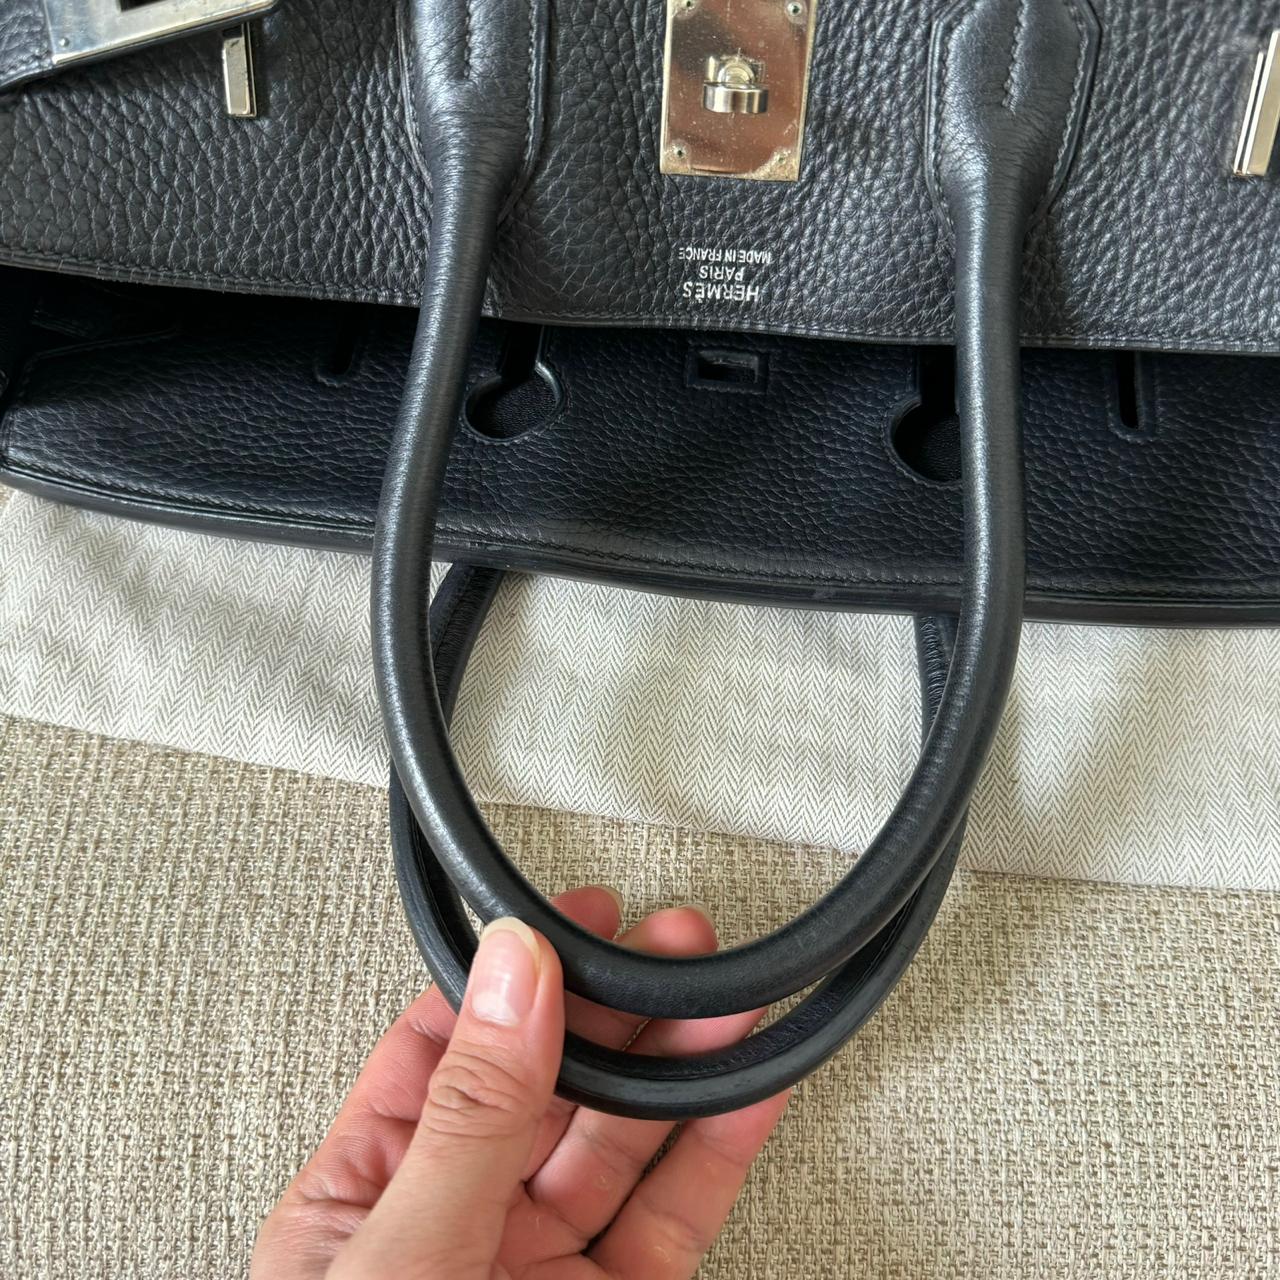 Hermes Birkin 35 B35 Clemence Black PHW handbag